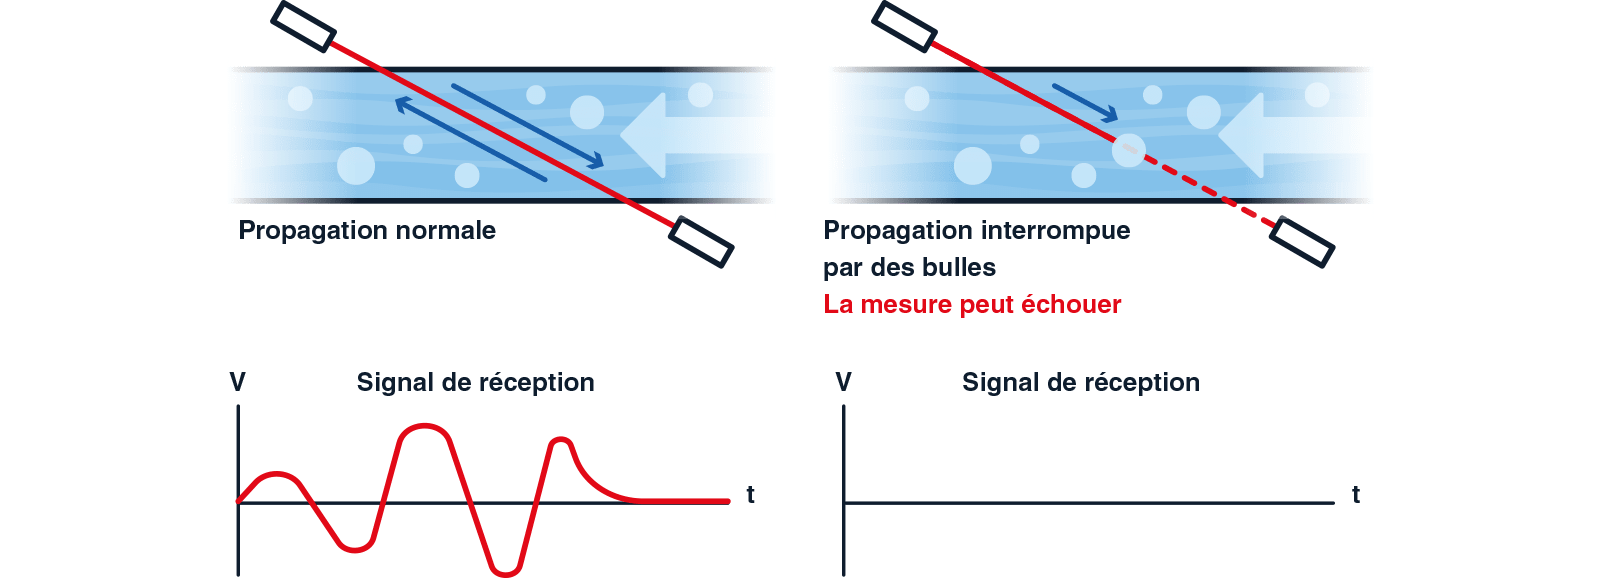 propagation-normale-et-interrompue-schema-fr